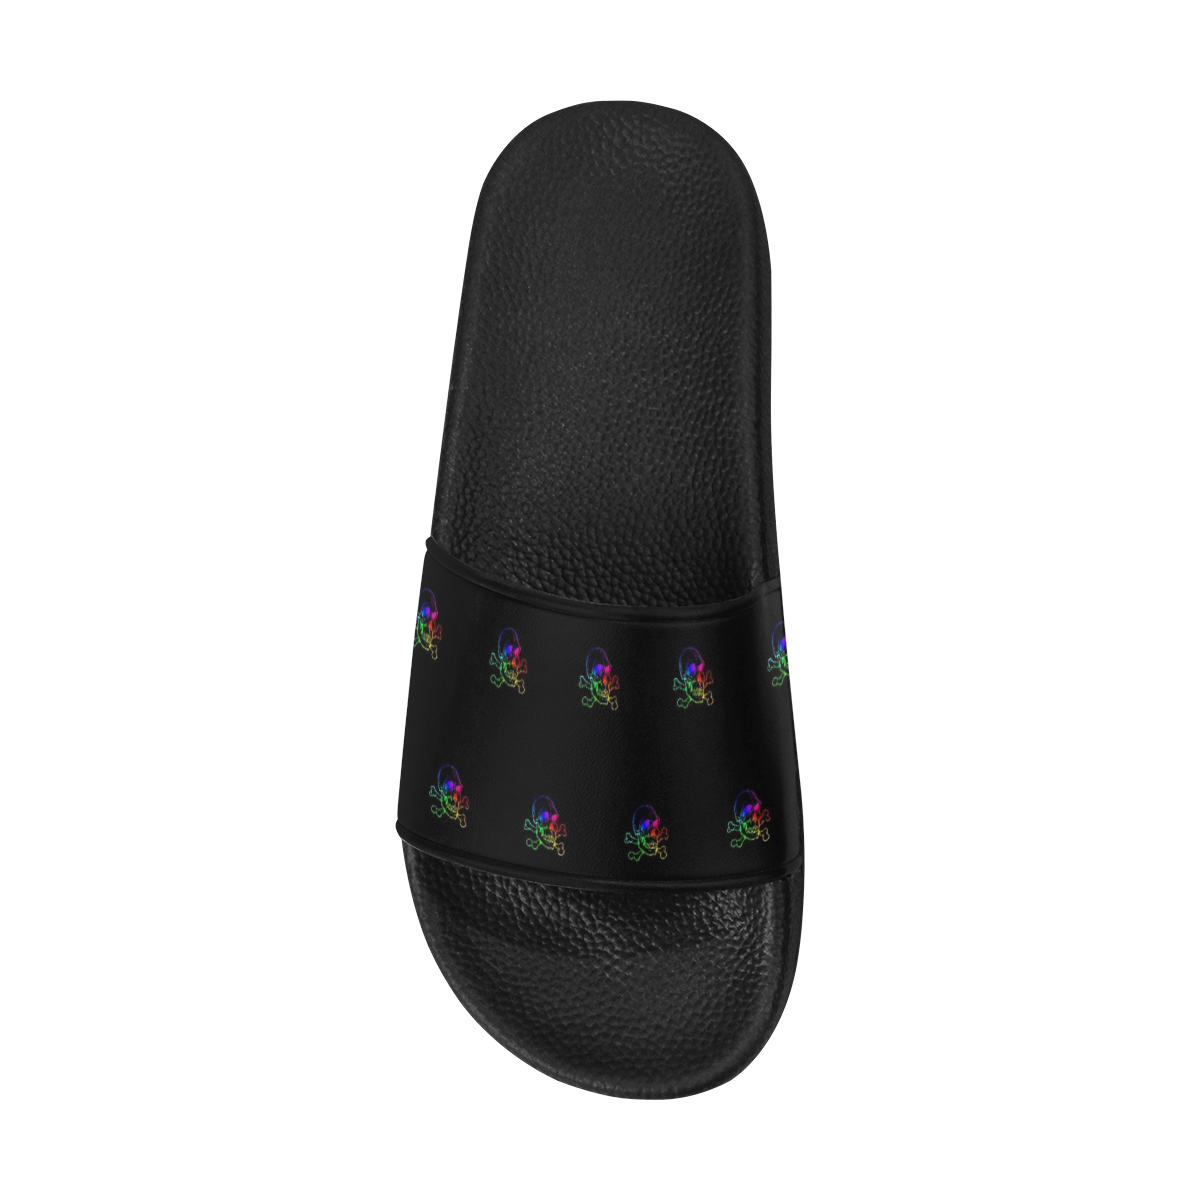 Skull 816 (Halloween) rainbow pattern Men's Slide Sandals (Model 057)